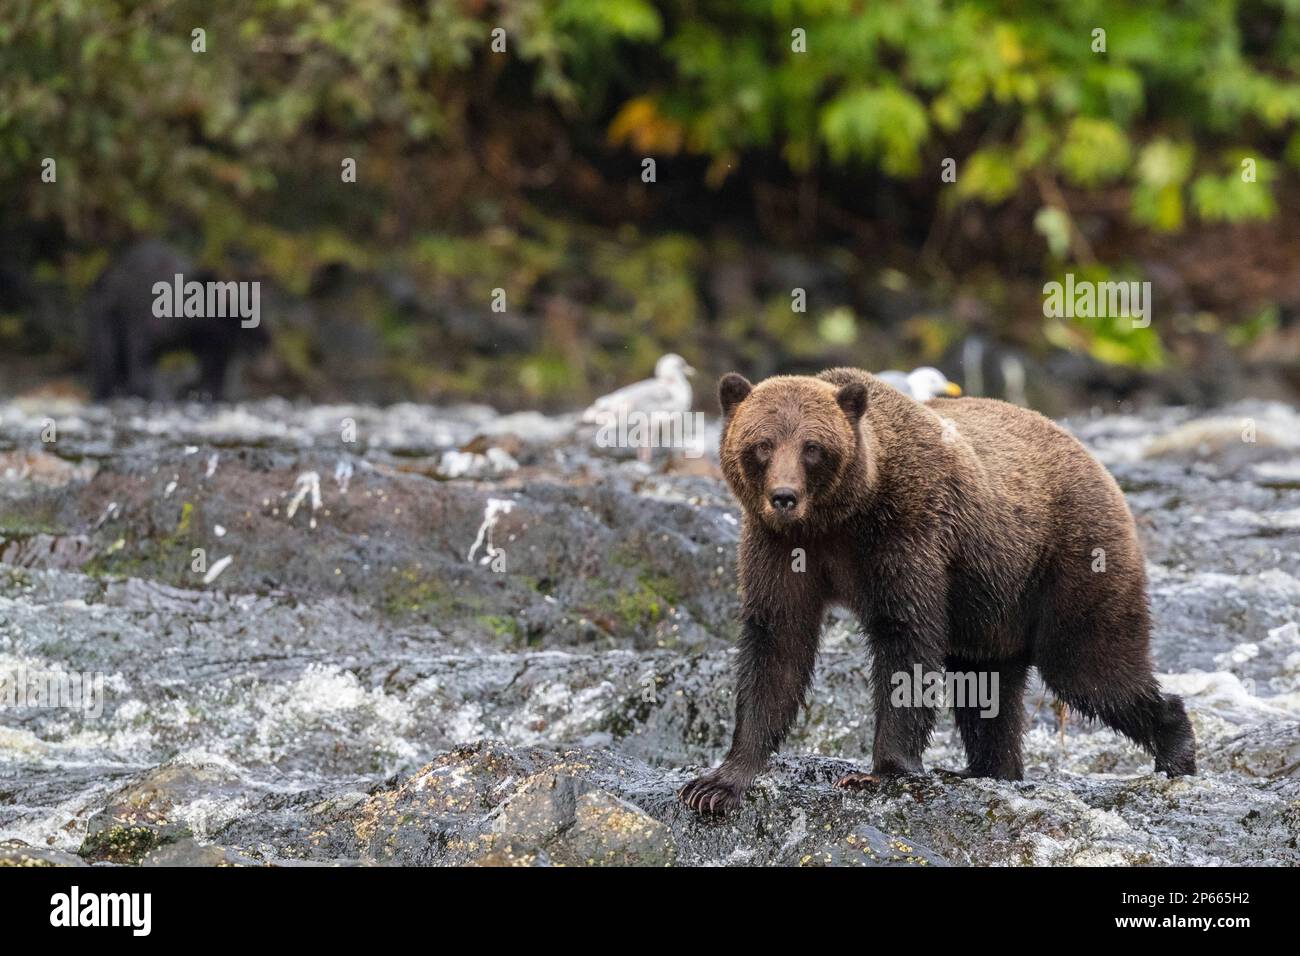 Ours brun adulte (Ursus arctos), le long du ruisseau de saumon rose sur l'île Chichagof, Alaska, États-Unis d'Amérique, Amérique du Nord Banque D'Images